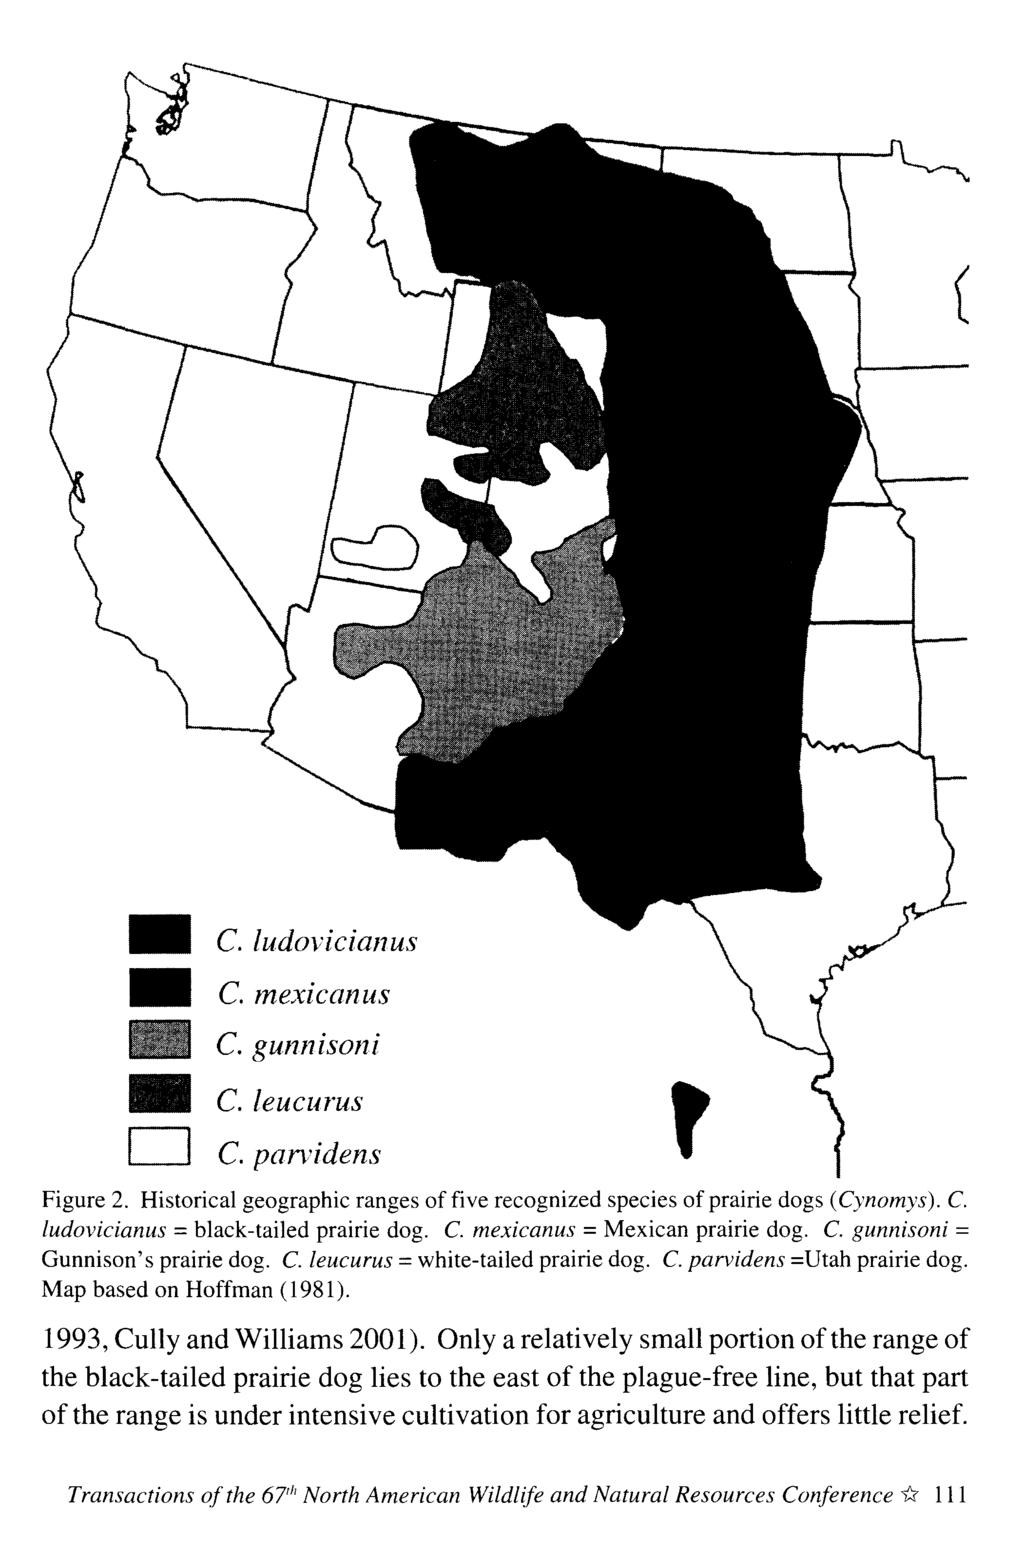 C. ludovicianus C. mexicanus, C. gunn isoni C.leucurus D c. pan'idens Figure 2. Historical geographic ranges of five recognized species of prairie dogs (Cynomys). C. ludovicianus = black-tailed prairie dog.